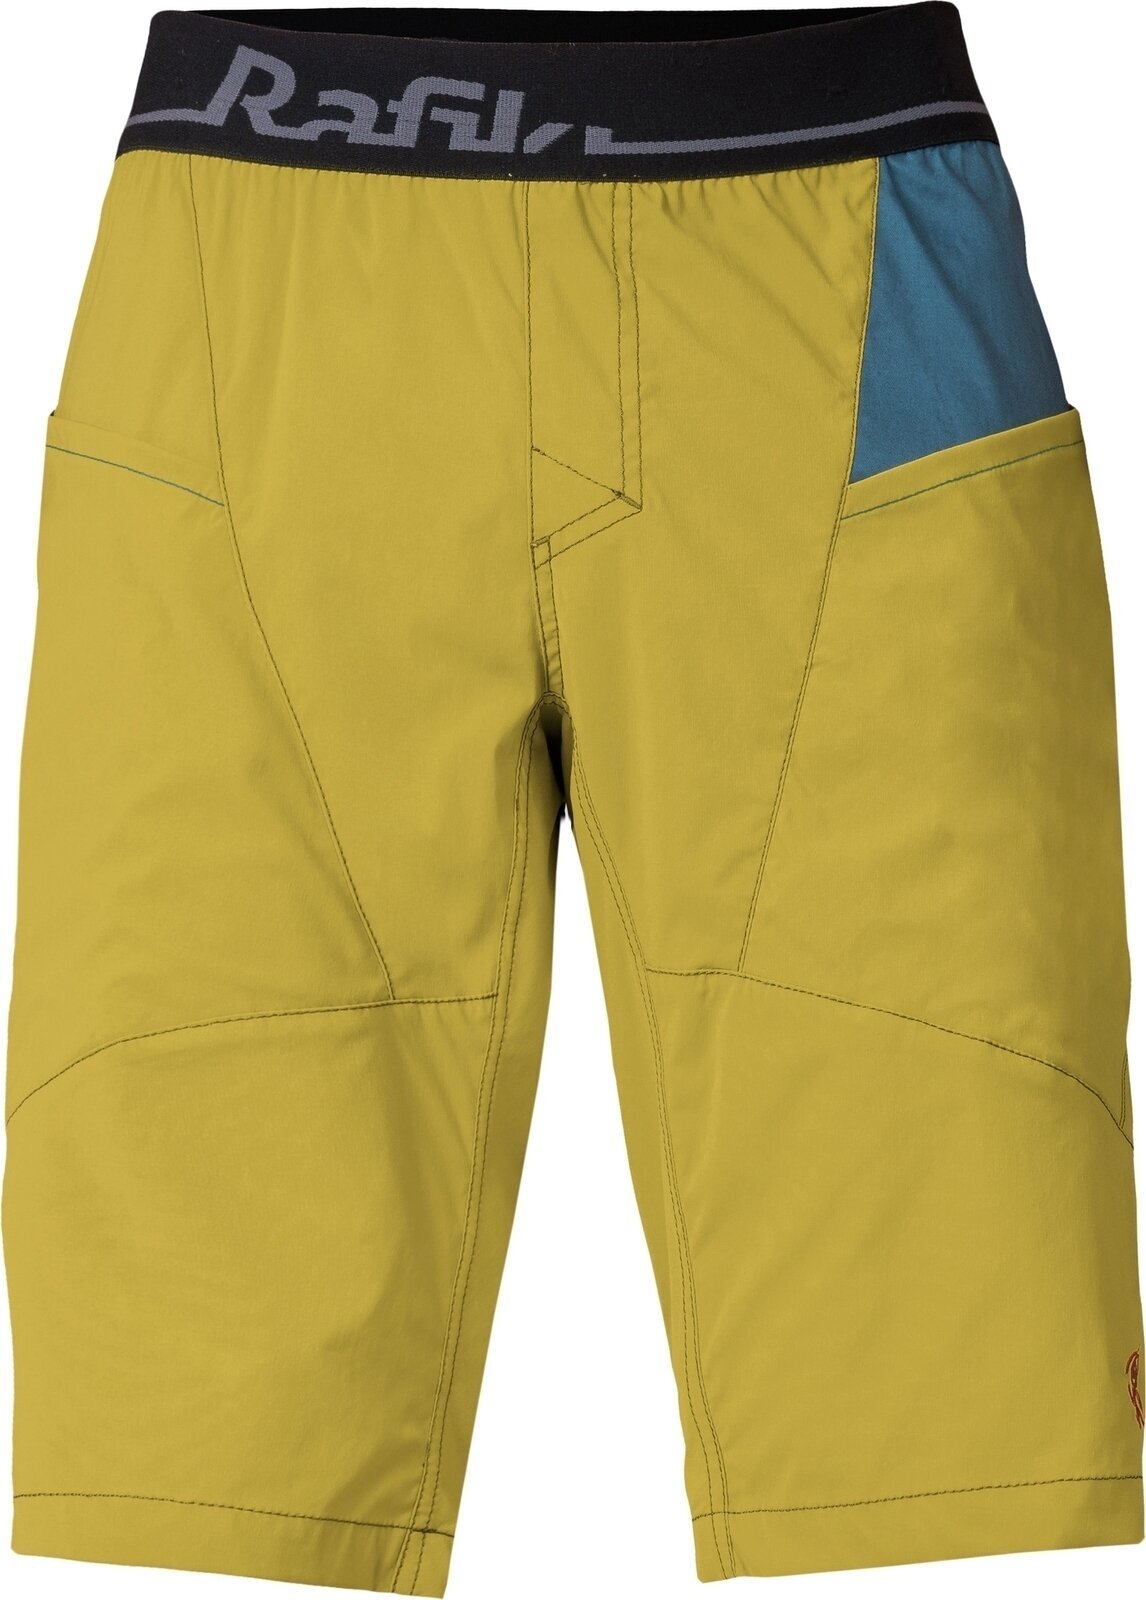 Outdoorshorts Rafiki Megos Man Shorts Cress Green/Stargazer L Outdoorshorts